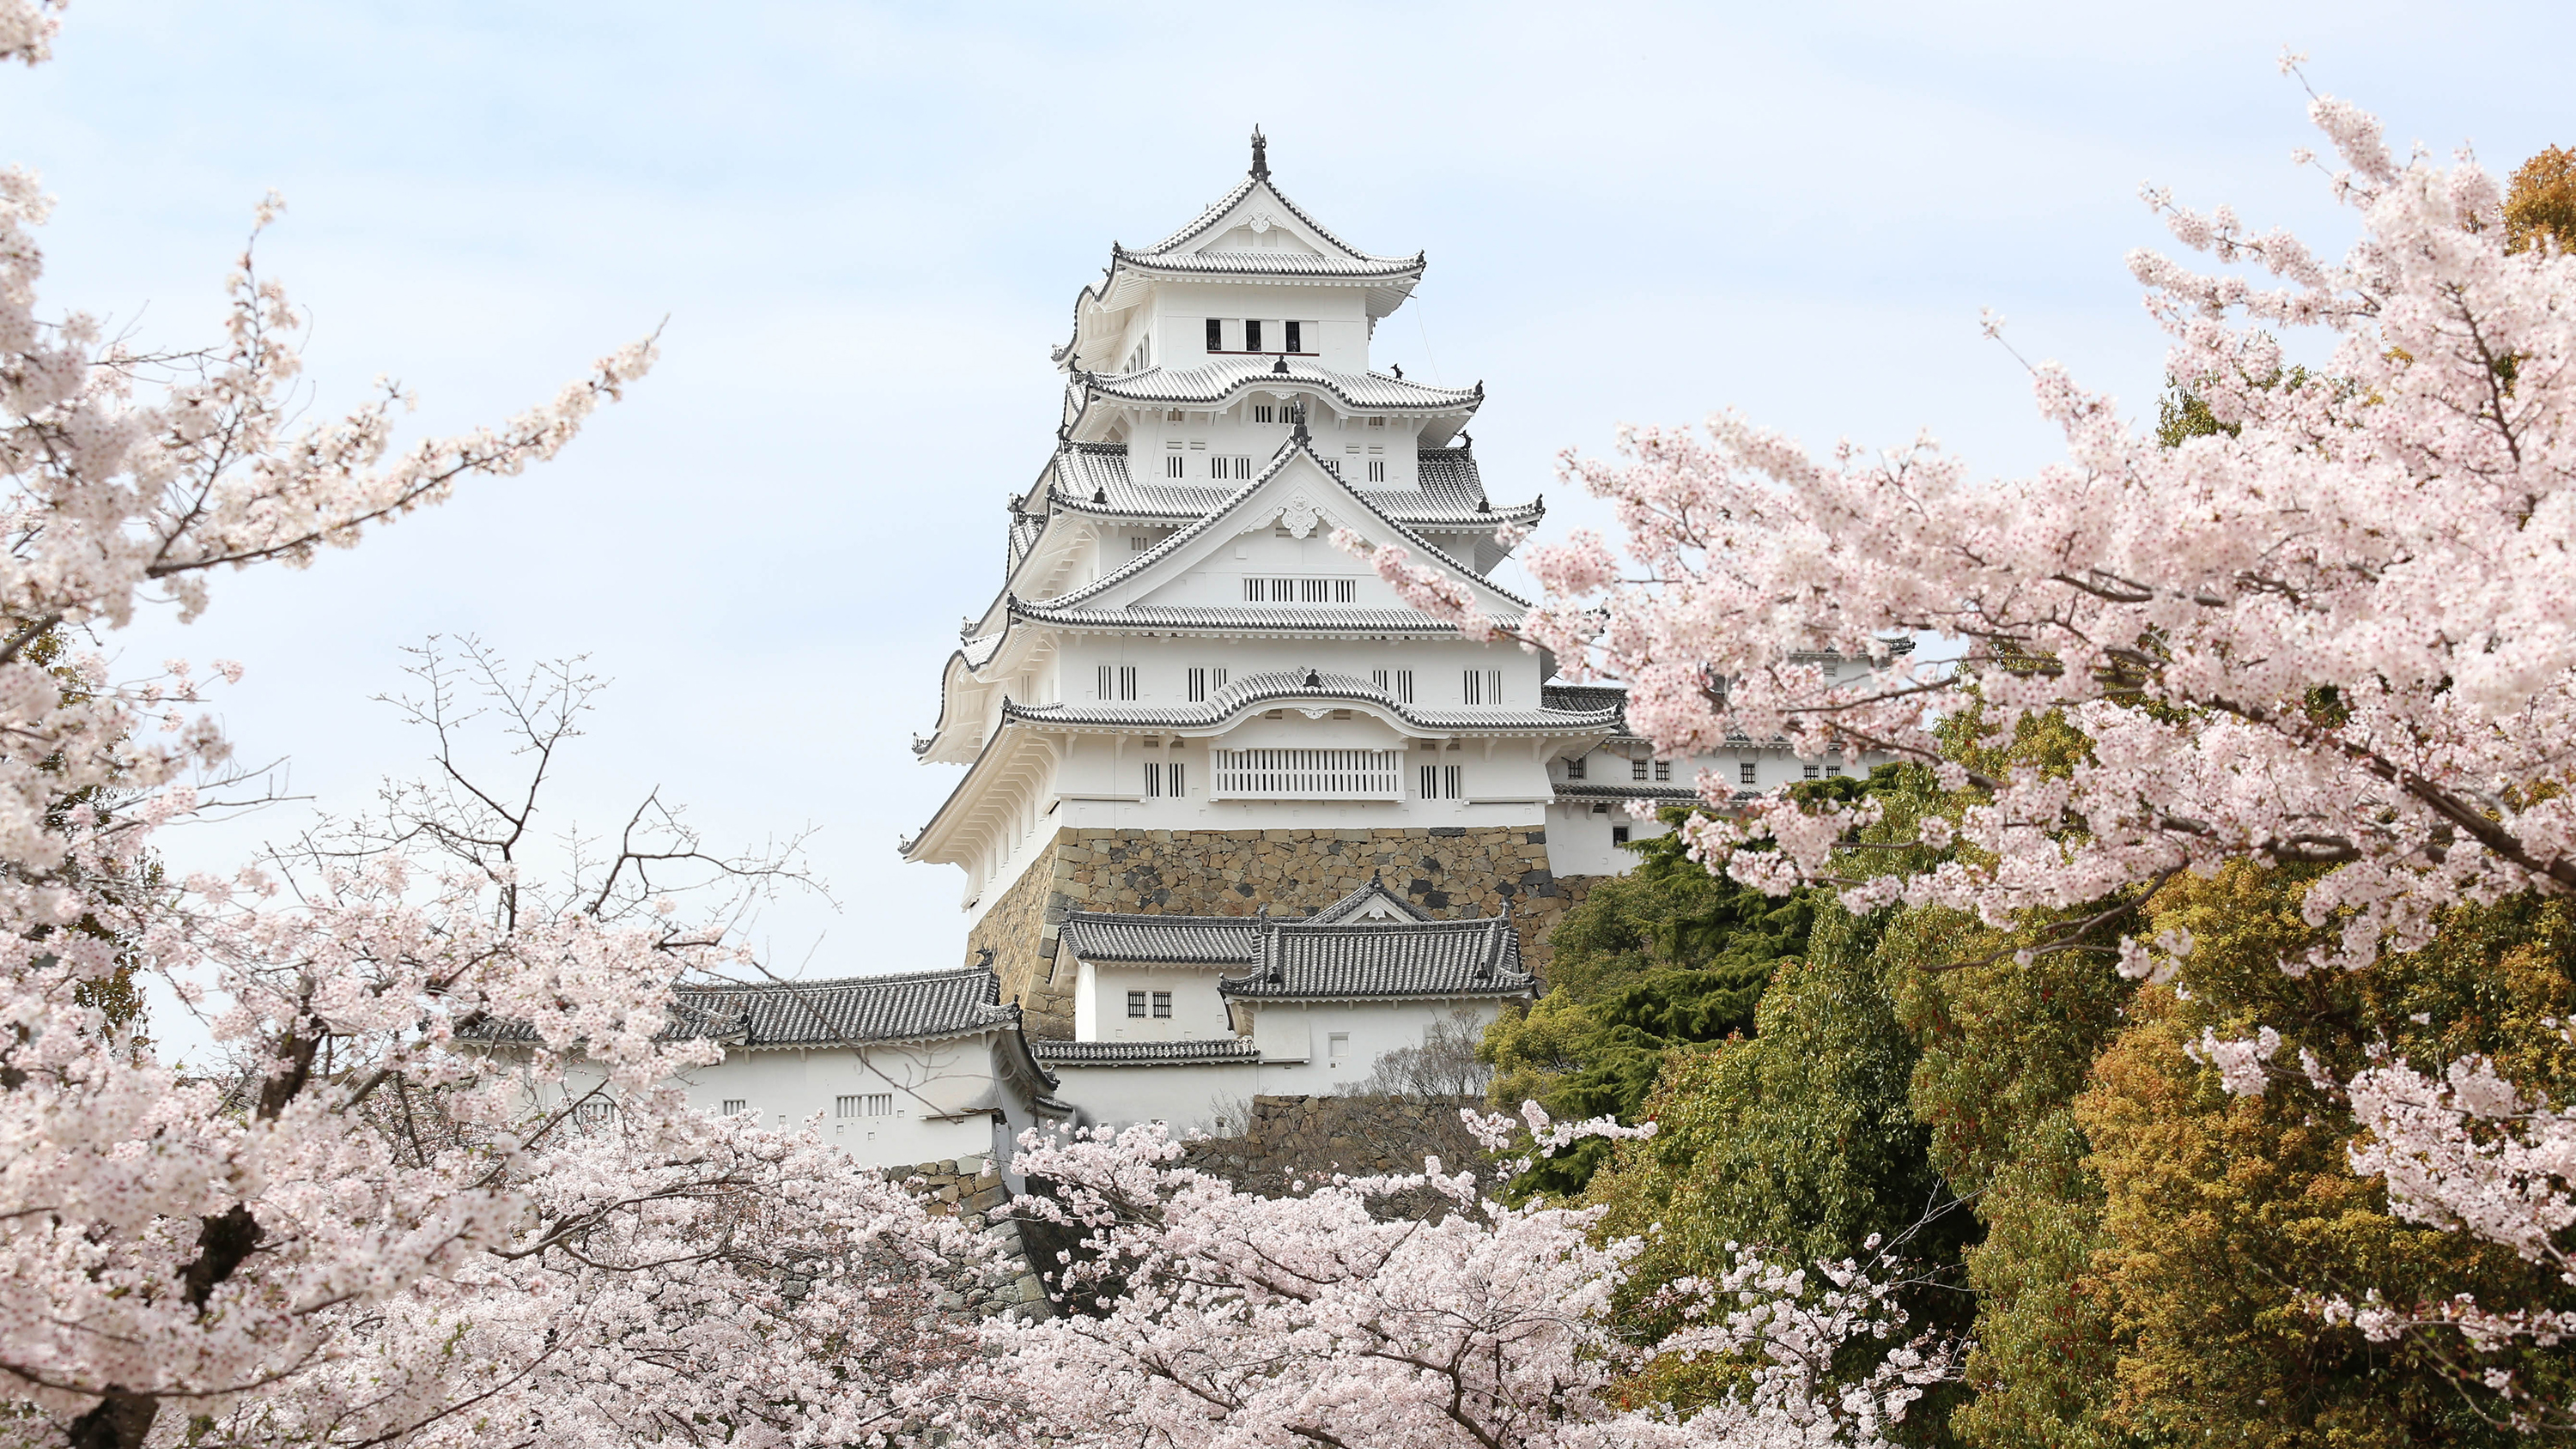  春には美しい桜とのコントラストがみられる姫路城